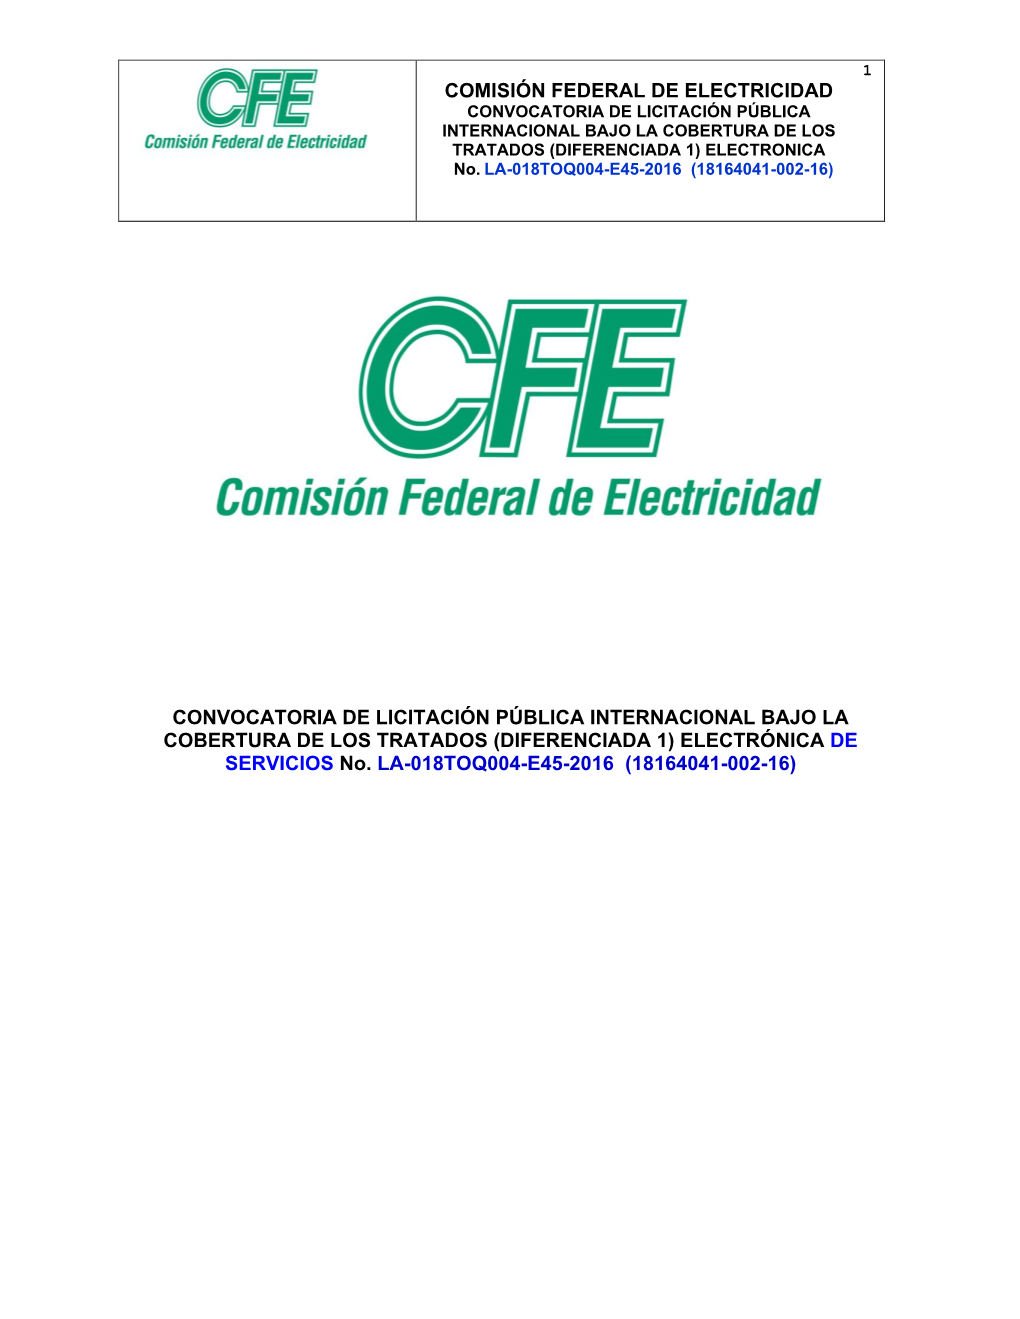 COMISIÓN FEDERAL DE ELECTRICIDAD CONVOCATORIA DE LICITACIÓN PÚBLICA INTERNACIONAL BAJO LA COBERTURA DE LOS TRATADOS (DIFERENCIADA 1) ELECTRONICA No